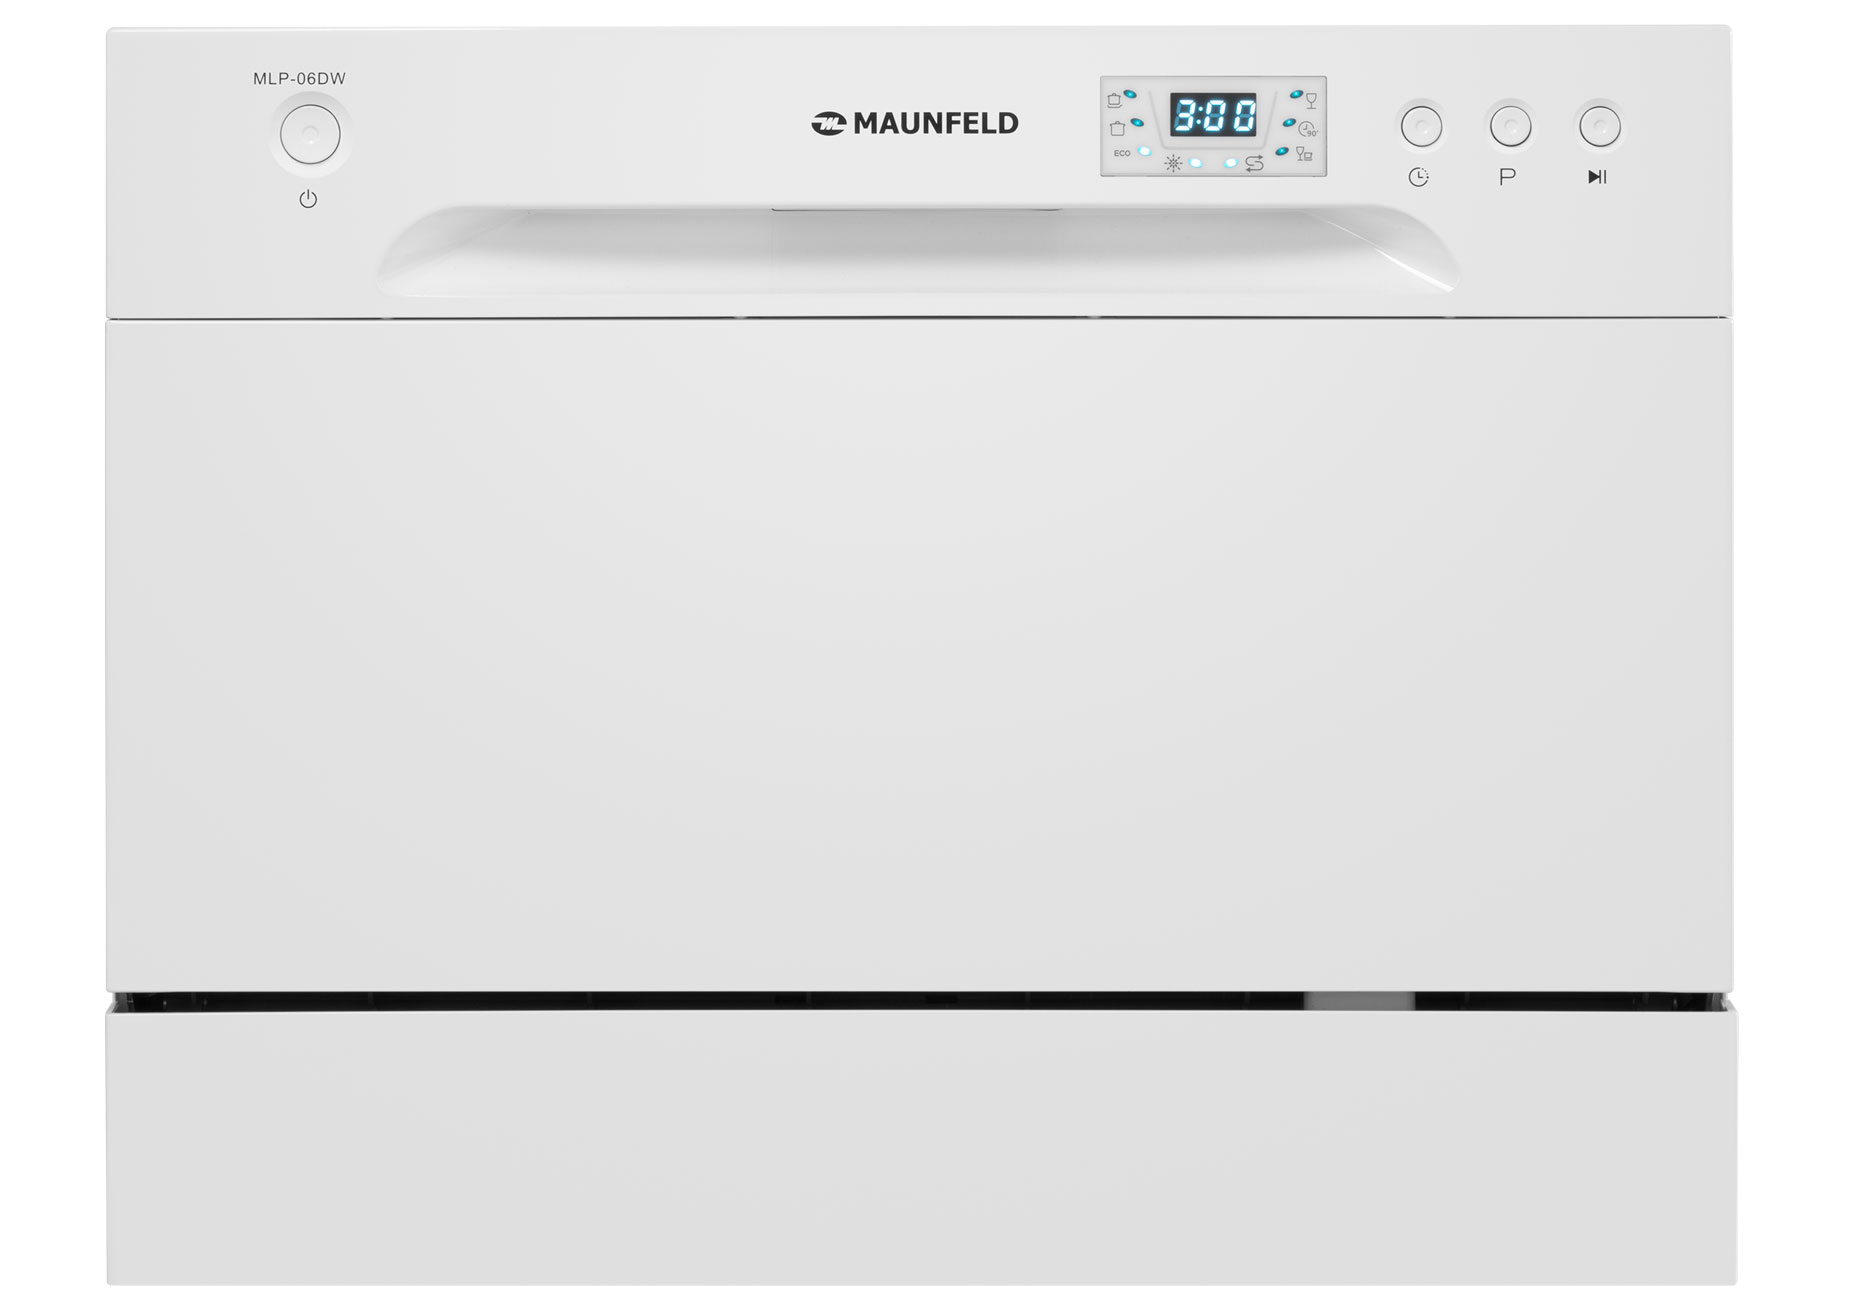 Посудомоечная машина MAUNFELD MLP-06DW белый кухонная машина maunfeld mf 425bl серебристый